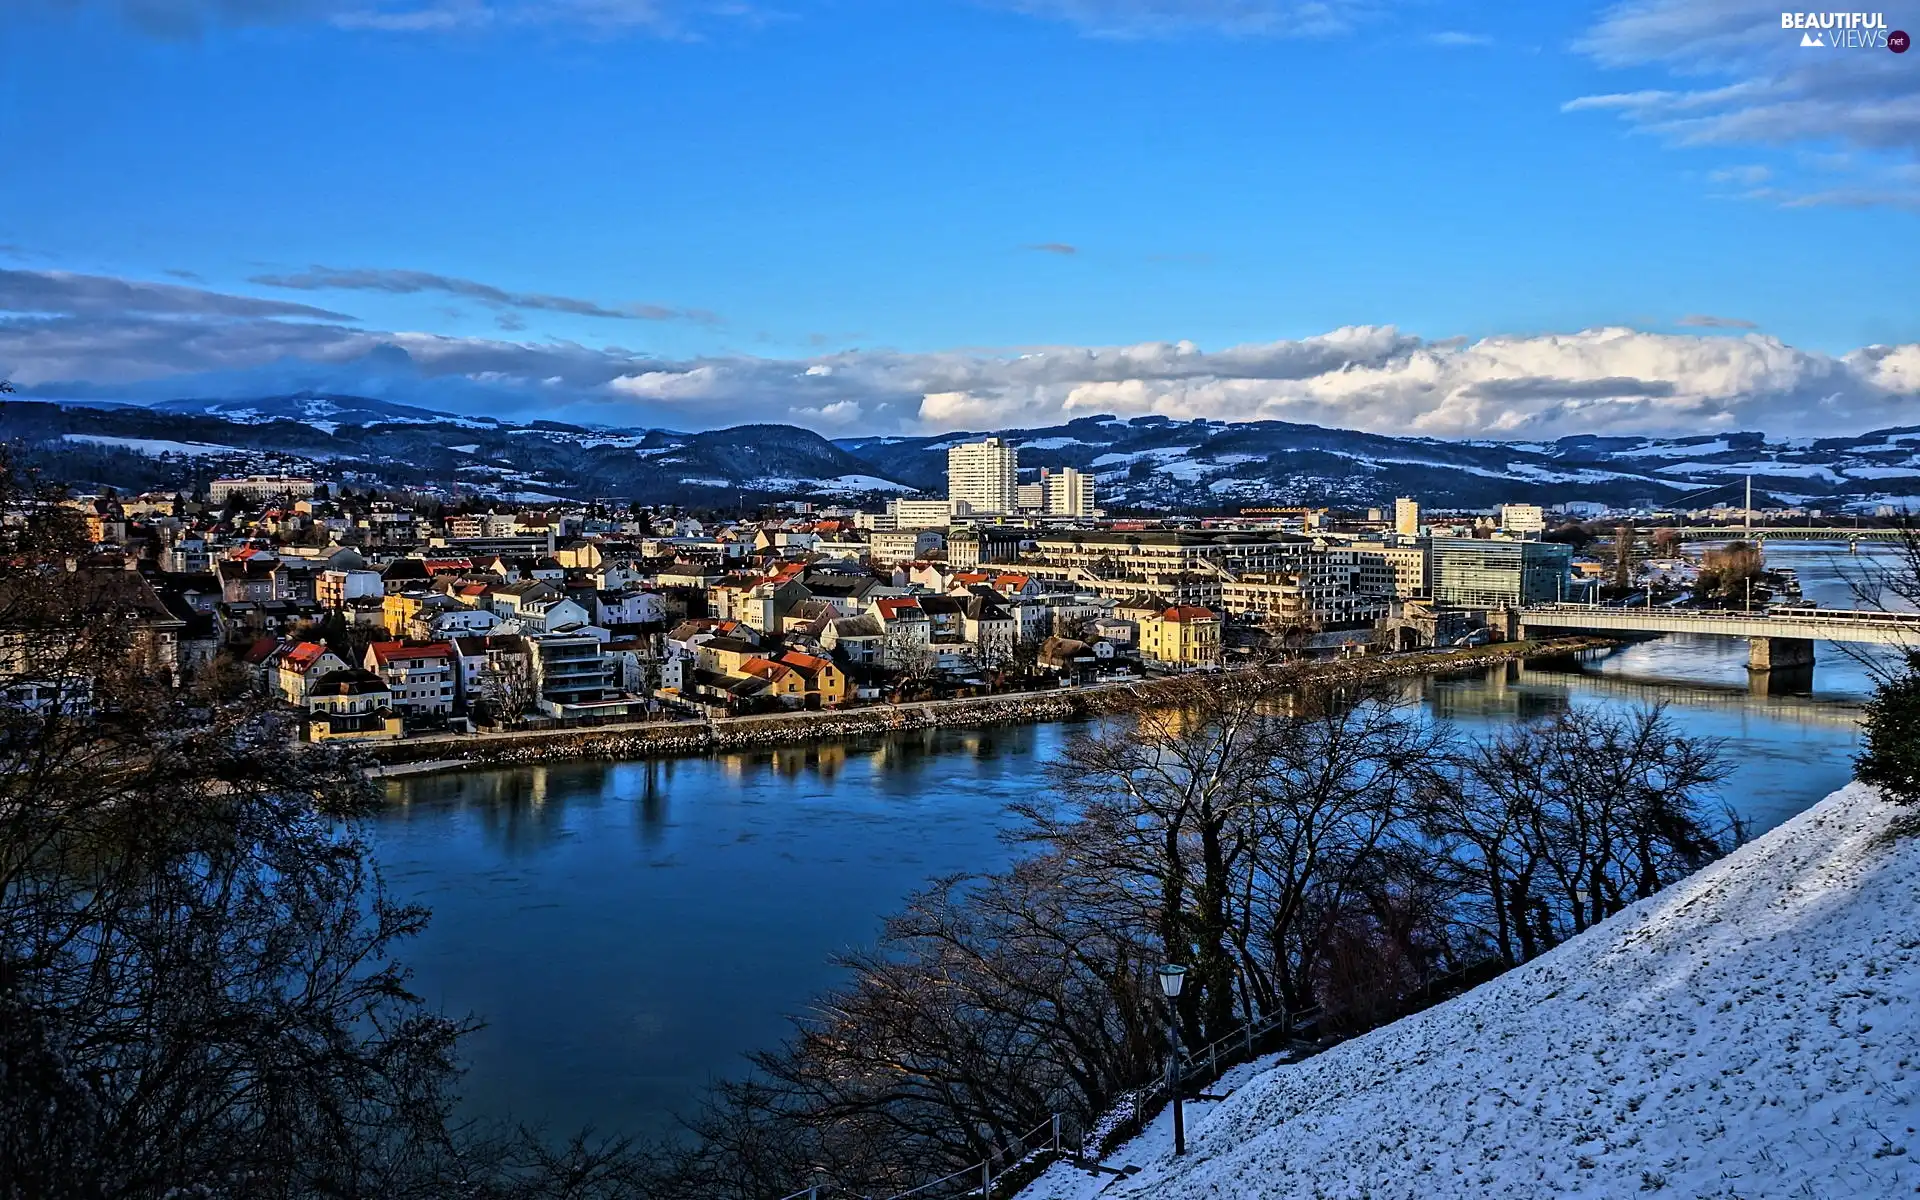 Mountains, Austria, River, Town, winter